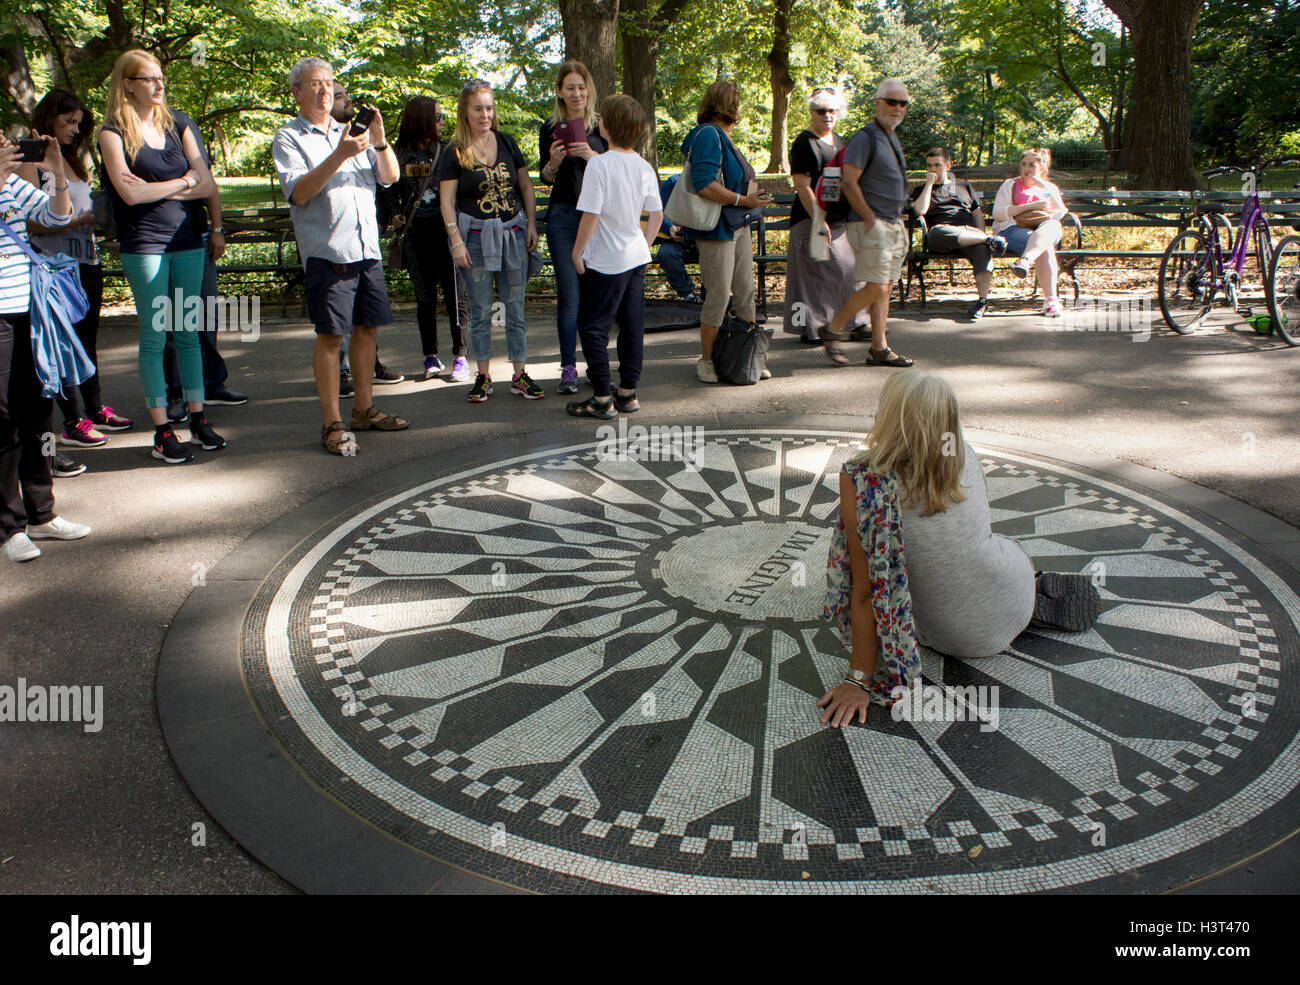 Los turistas posando en el mosaico de Imagine memorial de John Lennon en Strawberry Fields. Central Park, Manhattan, Nueva York. Foto de stock